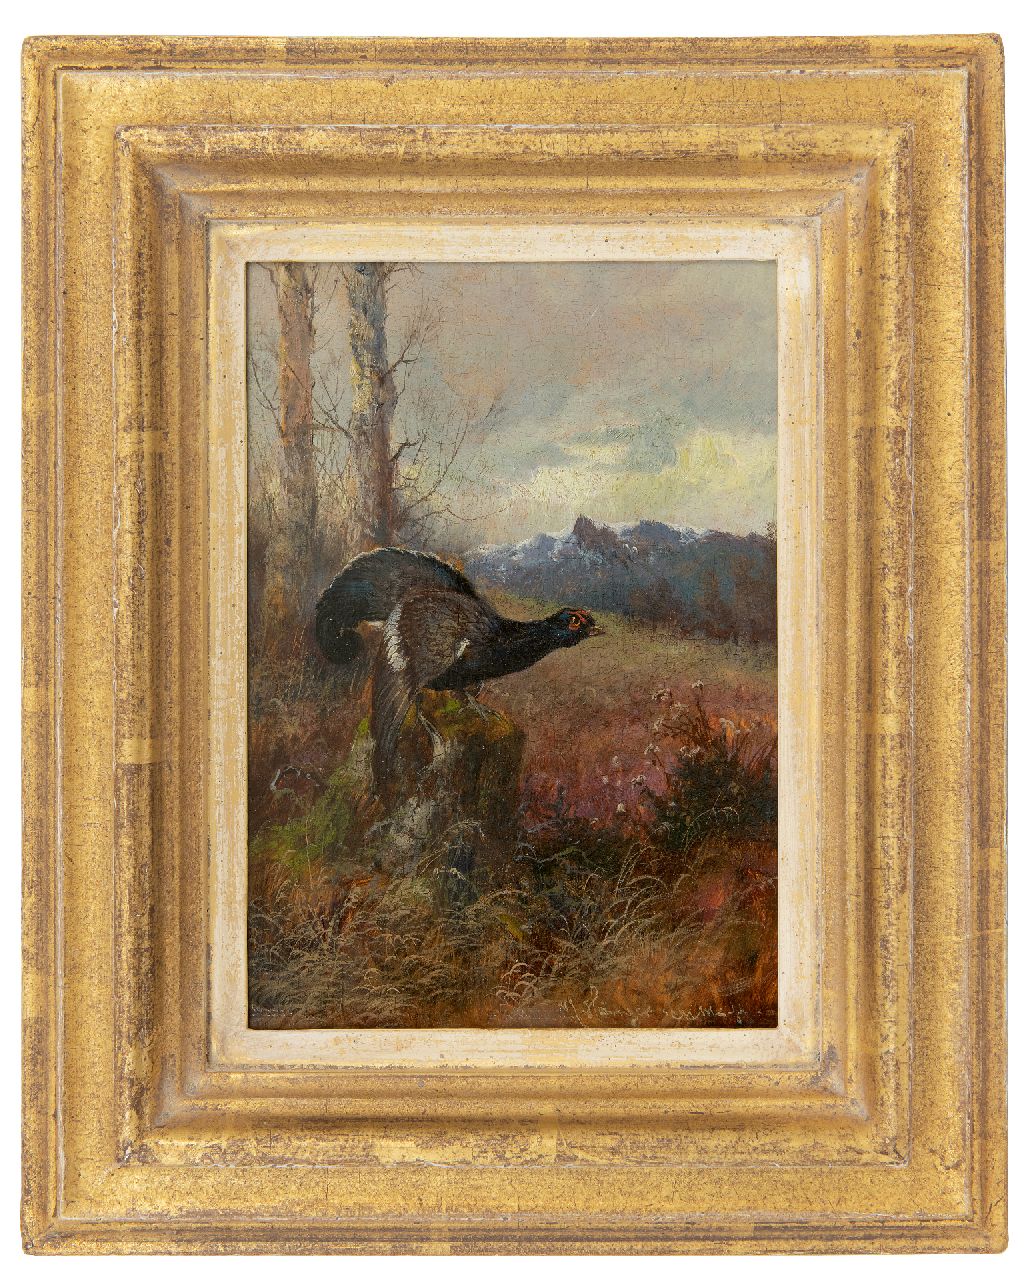 Hänger M.  | Max Hänger | Schilderijen te koop aangeboden | Korhoen naar rechts kijkend (uit een paar), olieverf op paneel 19,7 x 13,8 cm, gesigneerd rechtsonder